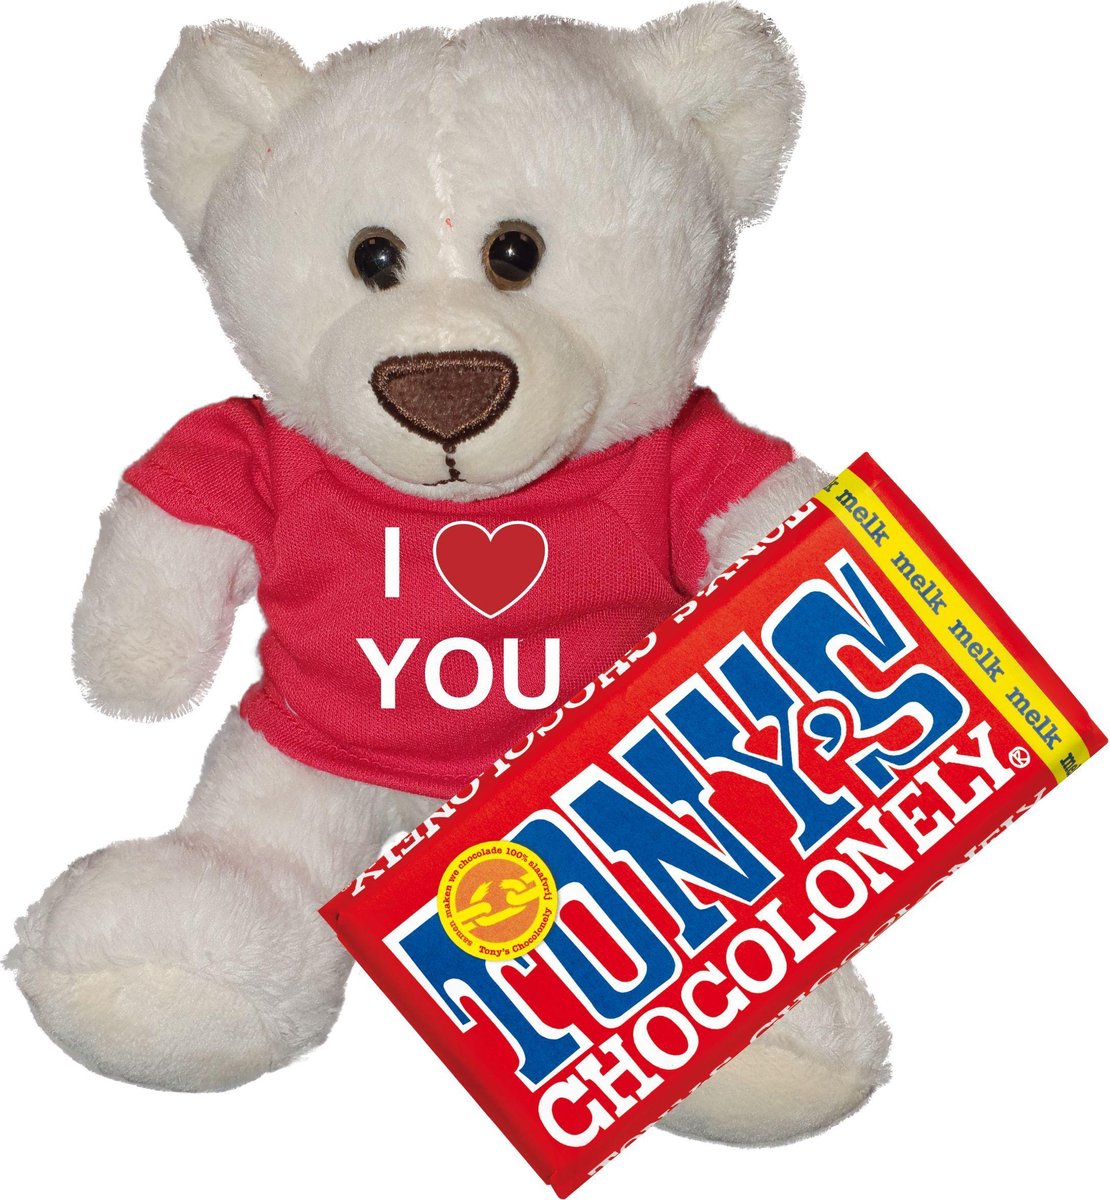 I love you teddy beer |Tony chocolonely | Valentijn | Valentijn cadeautje man vrouw | Valentijn cadeautje voor hem haar | Valentijnsdag cadeau knuffelbeer |Ik hou van jou | Rood - Merkloos